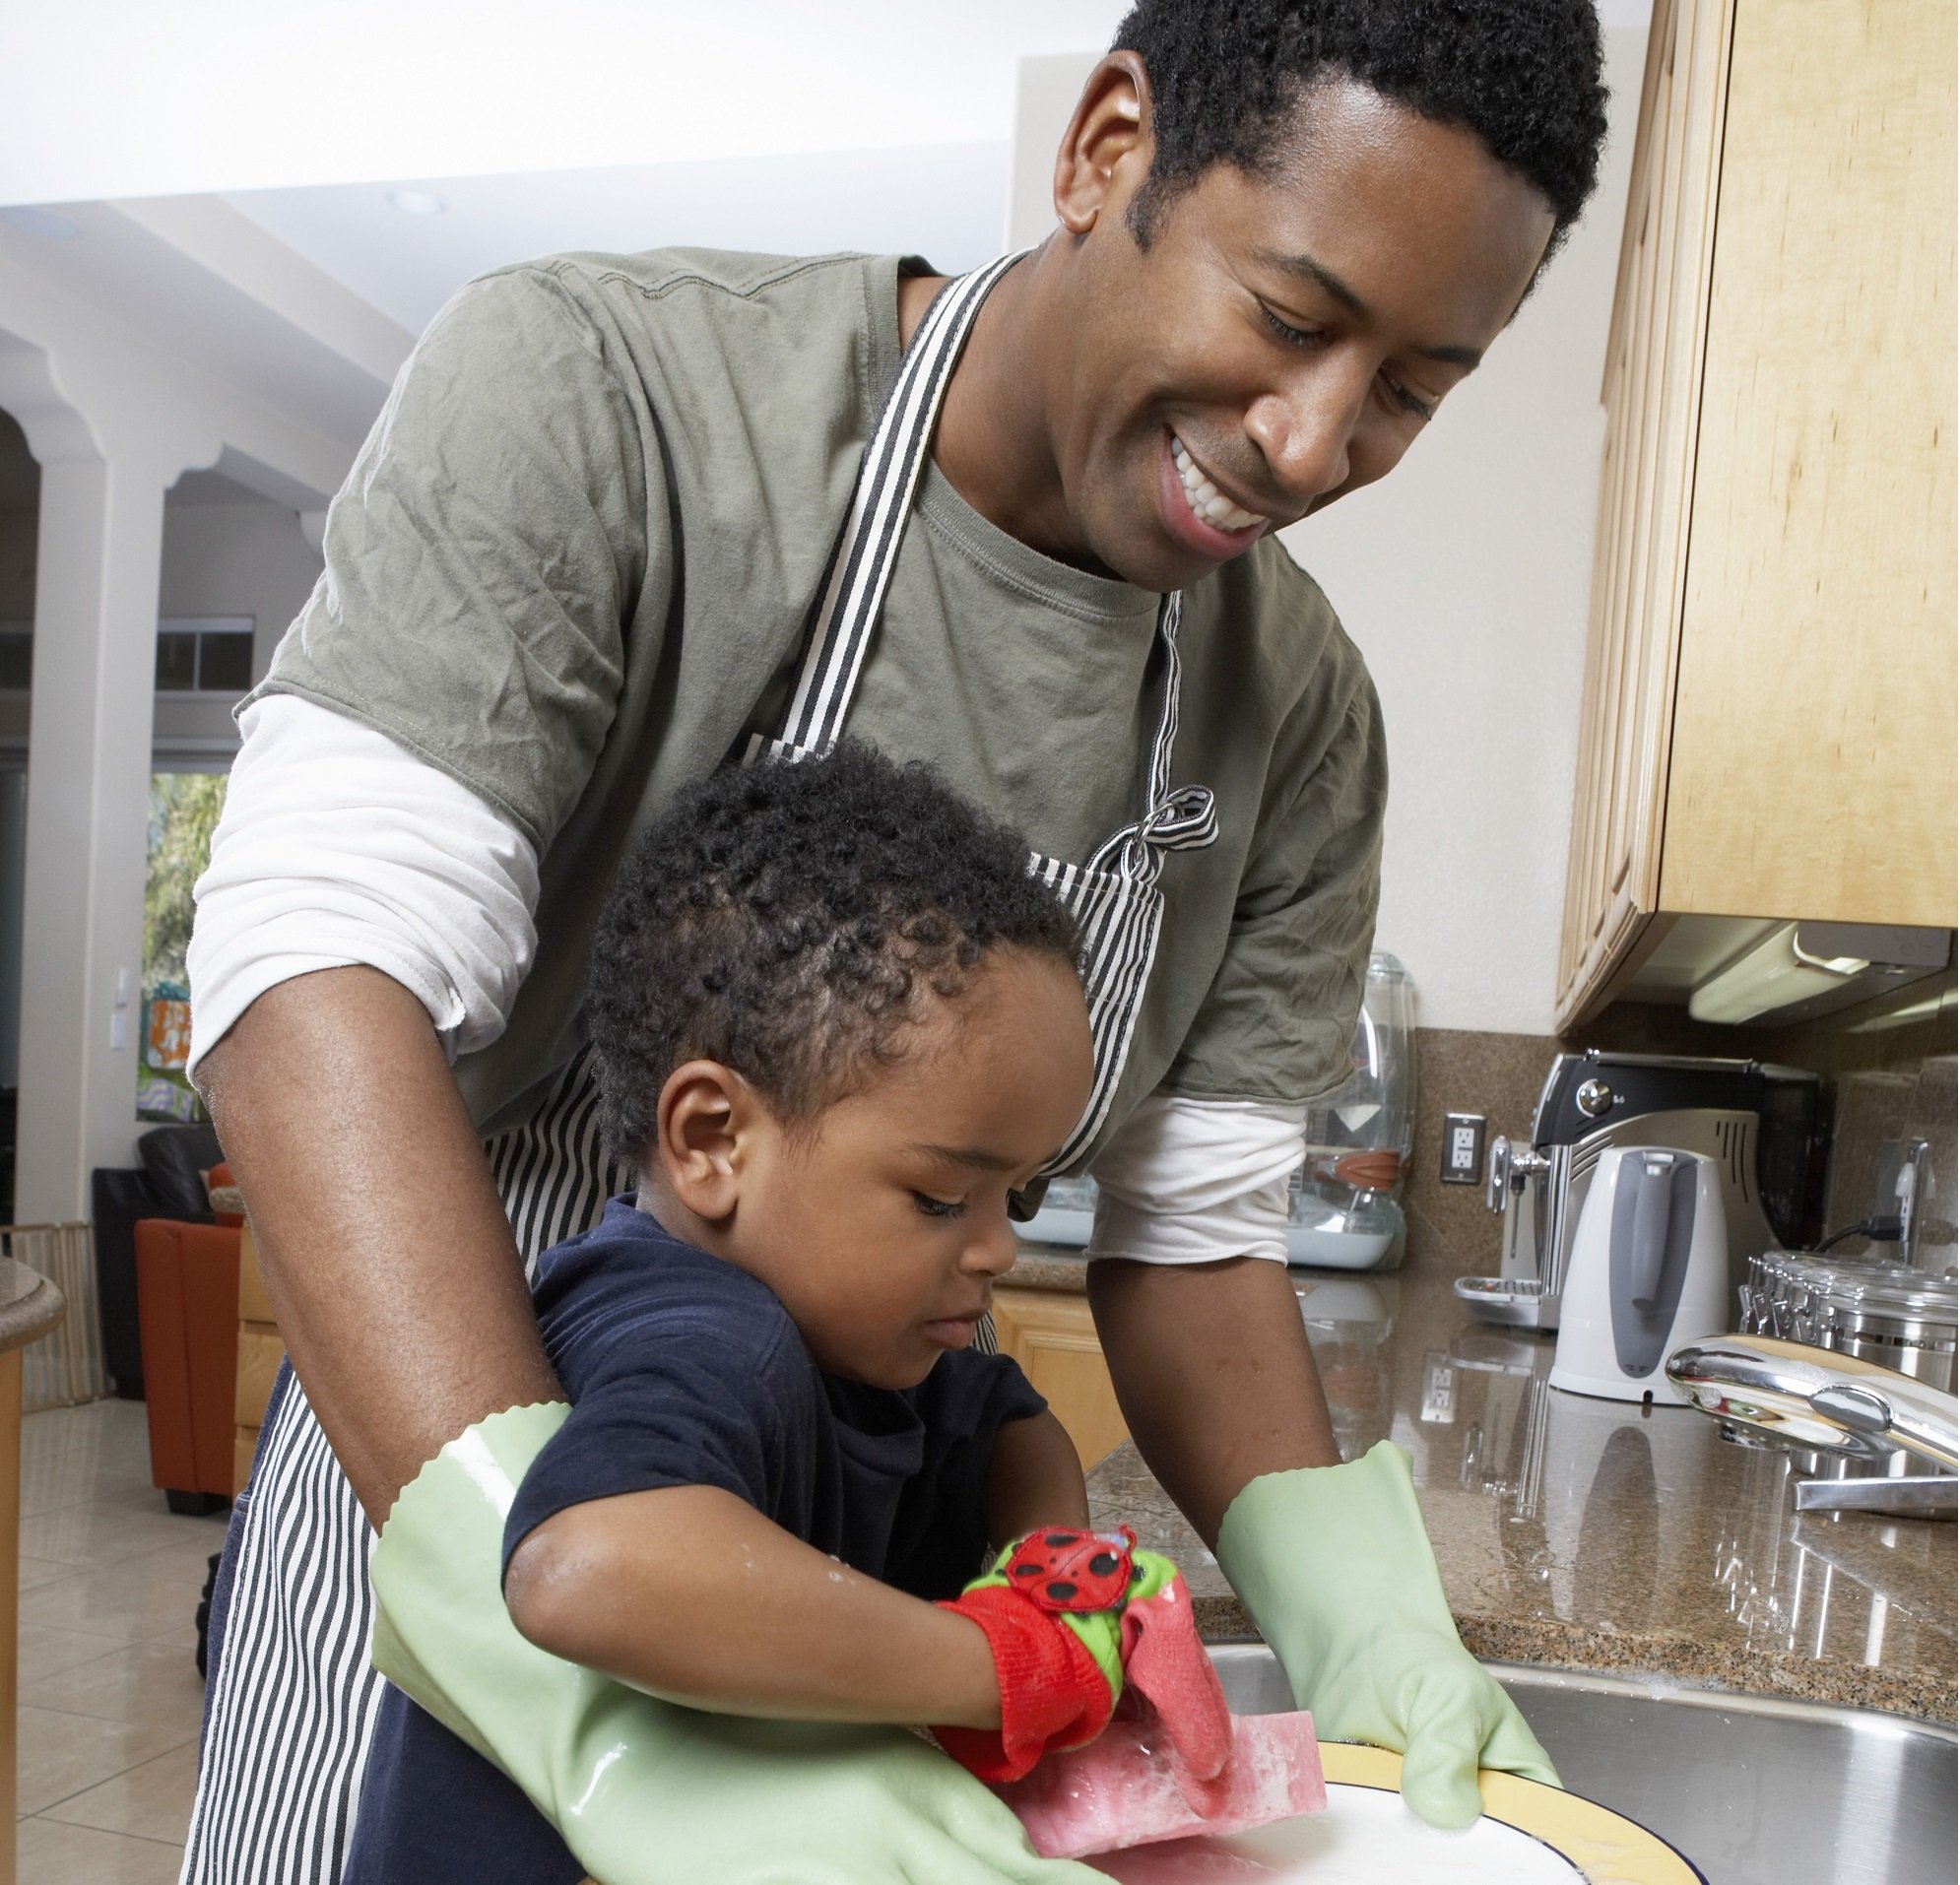 Padre e hijo pequeño lavan los platos juntos. | Foto: Shutterstock